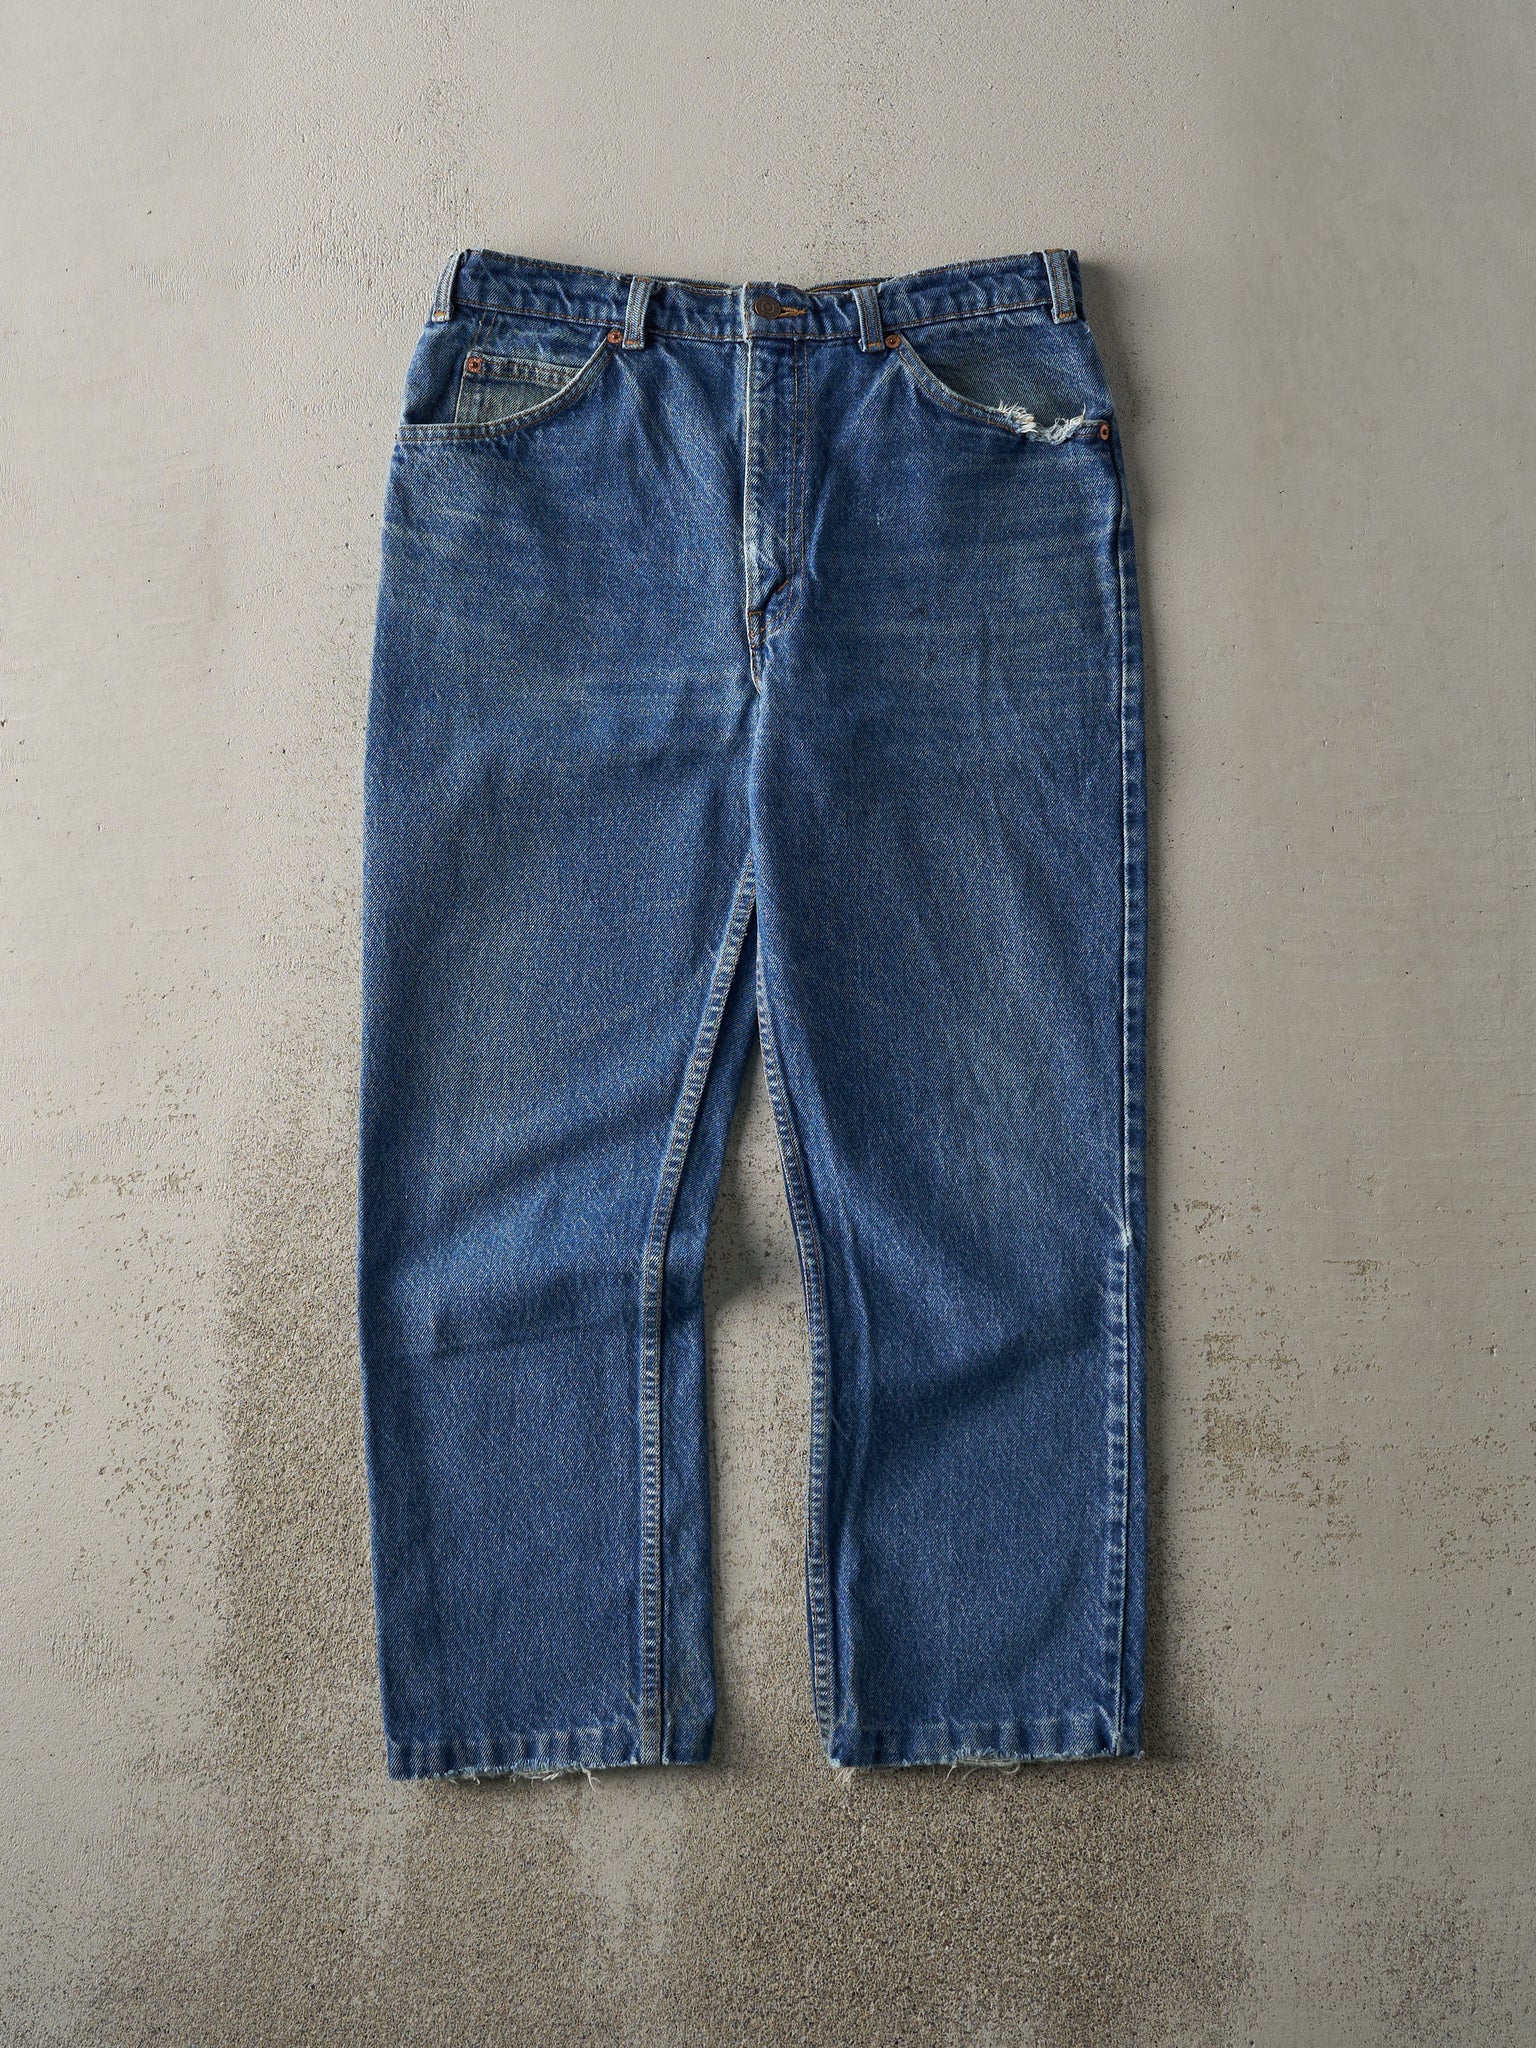 Vintage 80s Mid Wash Levi's Orange Tab 619 Jeans (32x27)